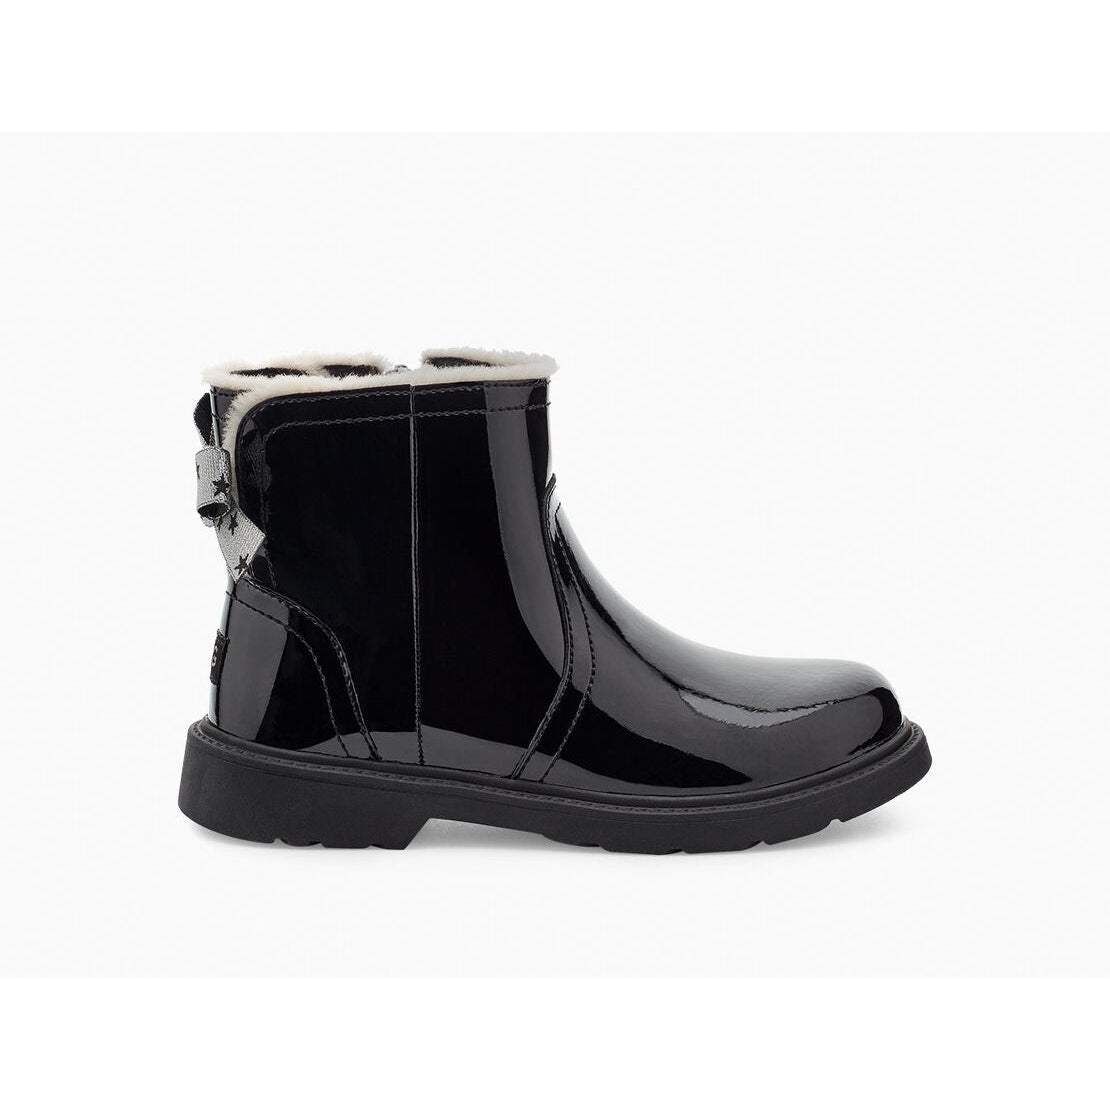 Ugg T Lynde Patent Boots - Size UK 11 - Black - Excellent